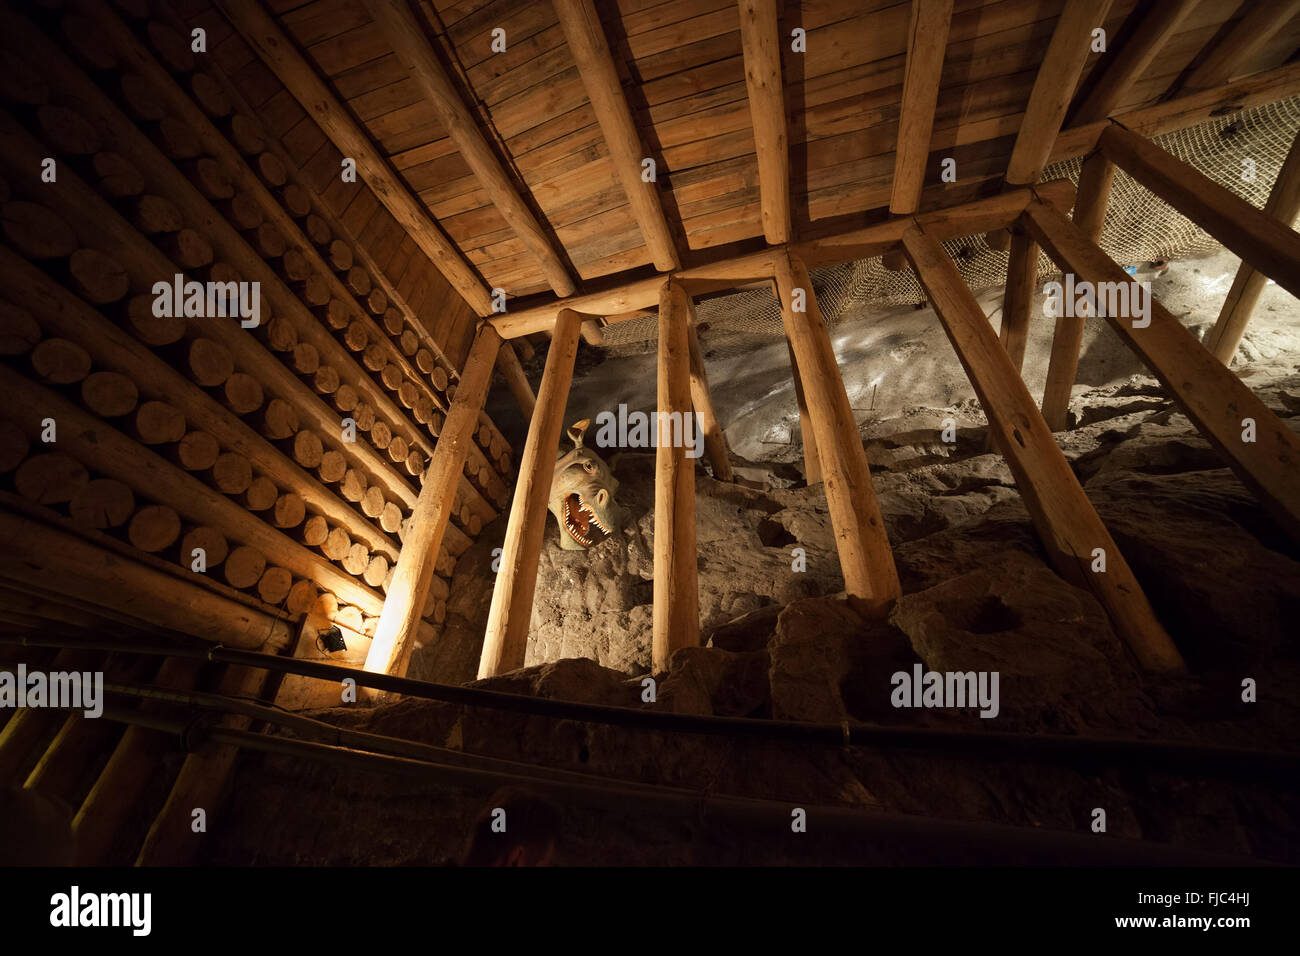 Europe, Poland, Wieliczka Salt Mine, wooden support, UNESCO World Heritage Site Stock Photo